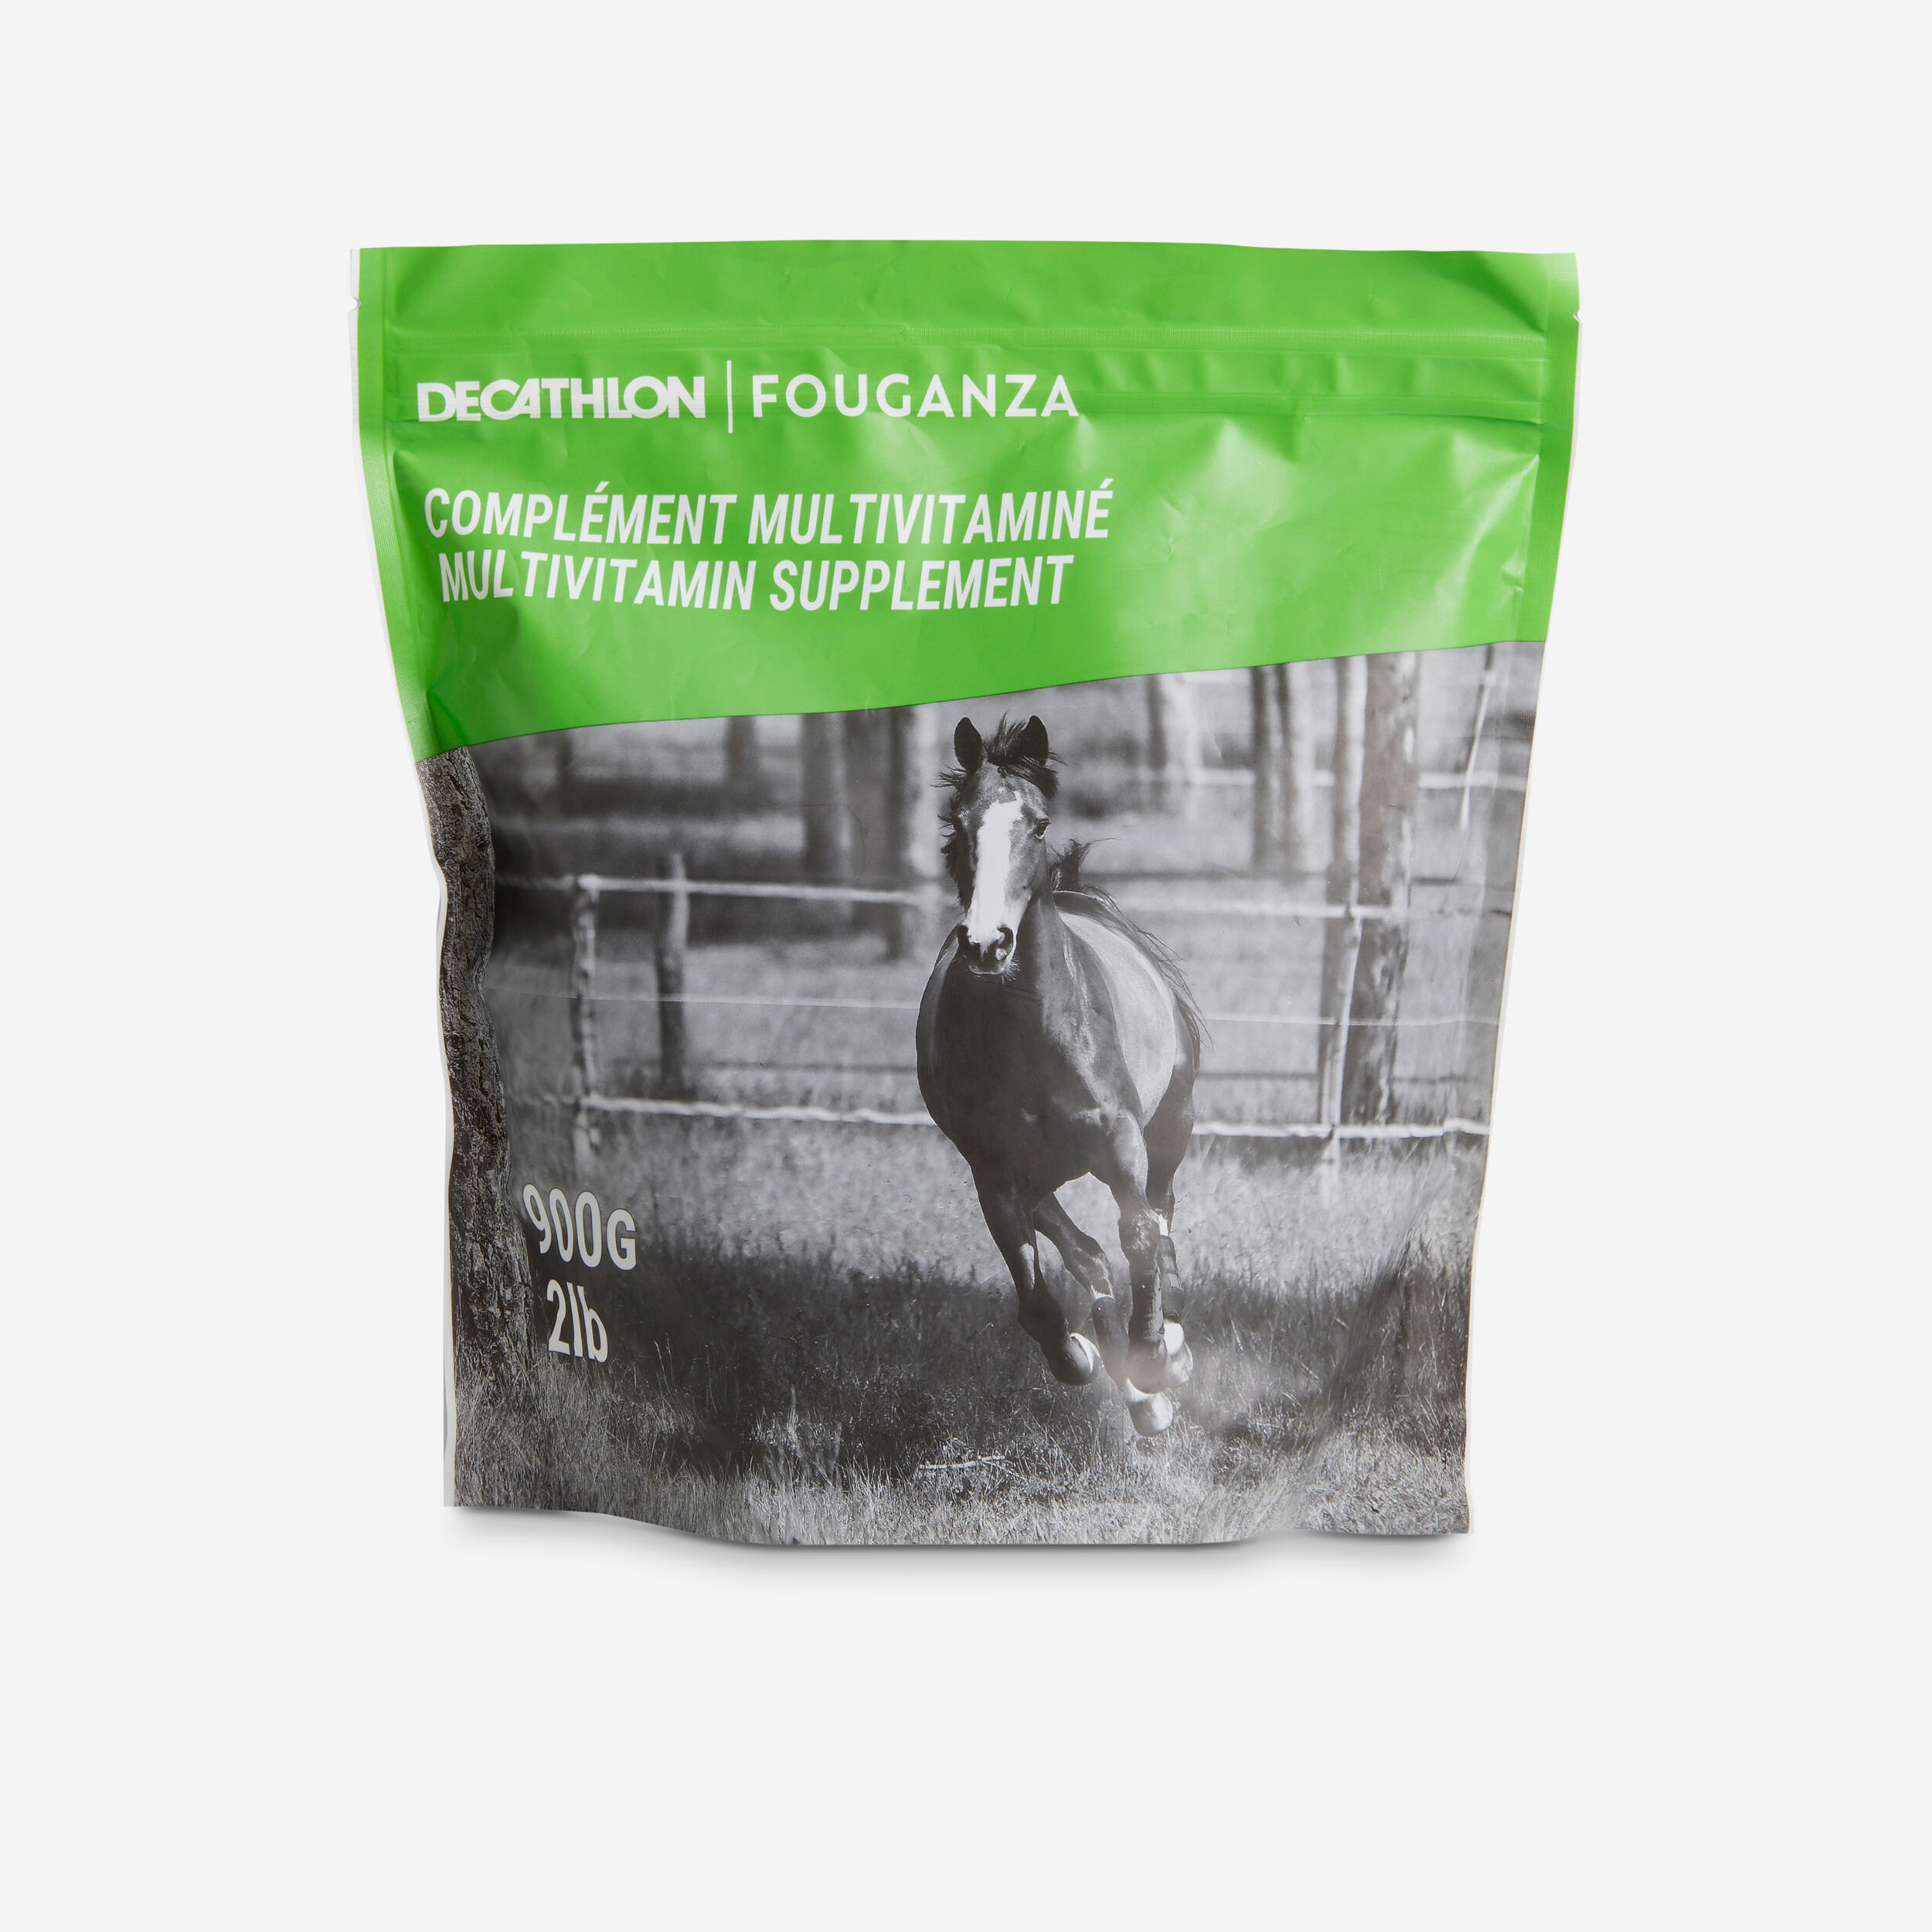 Decathlon | Integratore alimentare equitazione pony e cavallo CMV multivitaminico 900 g |  Fouganza